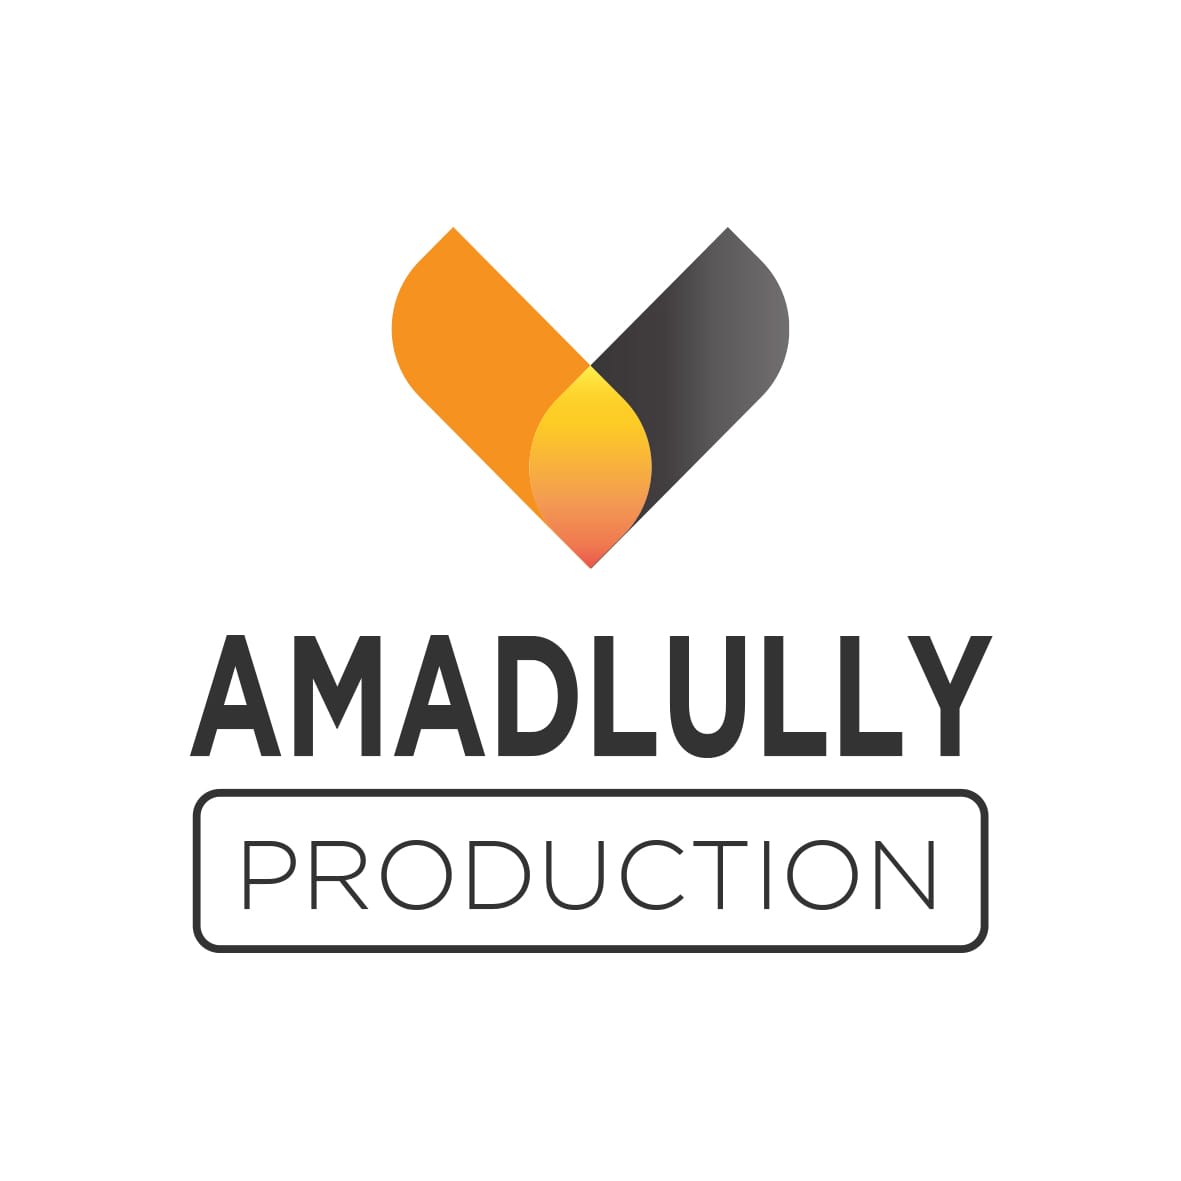 AMADLULLY PRODUCTION